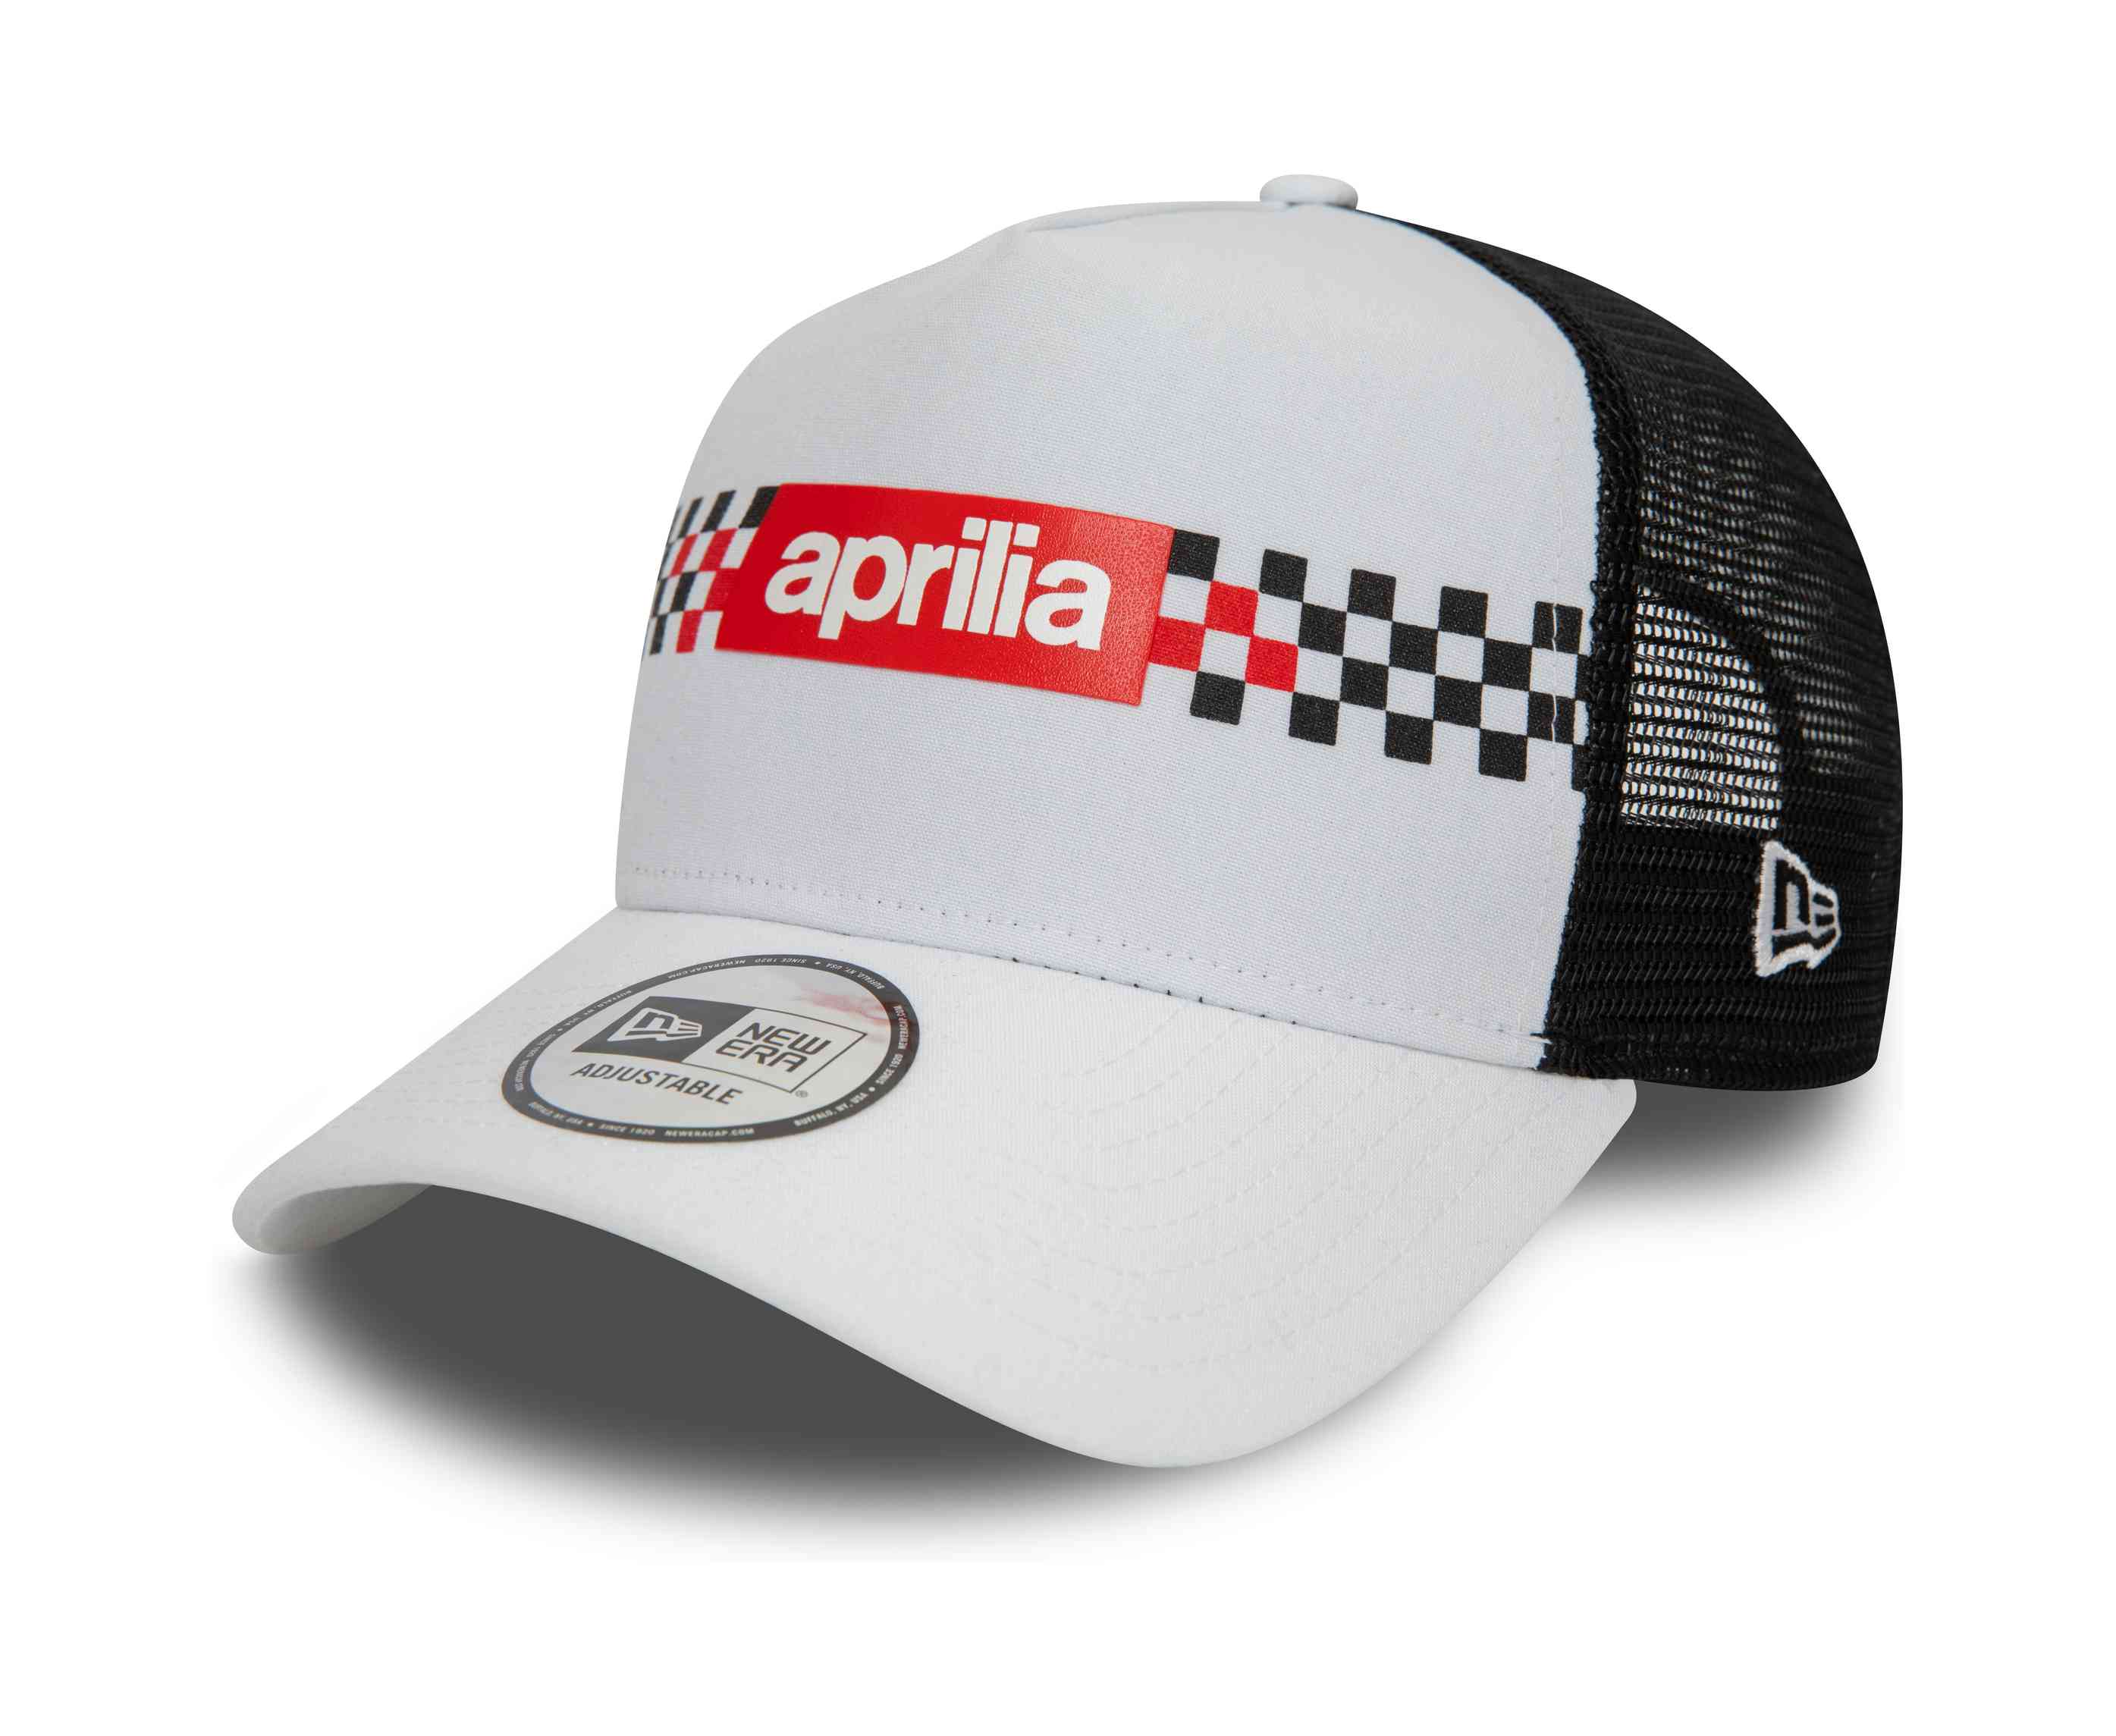 New Era - Aprilia Checker Print Trucker Snapback Cap